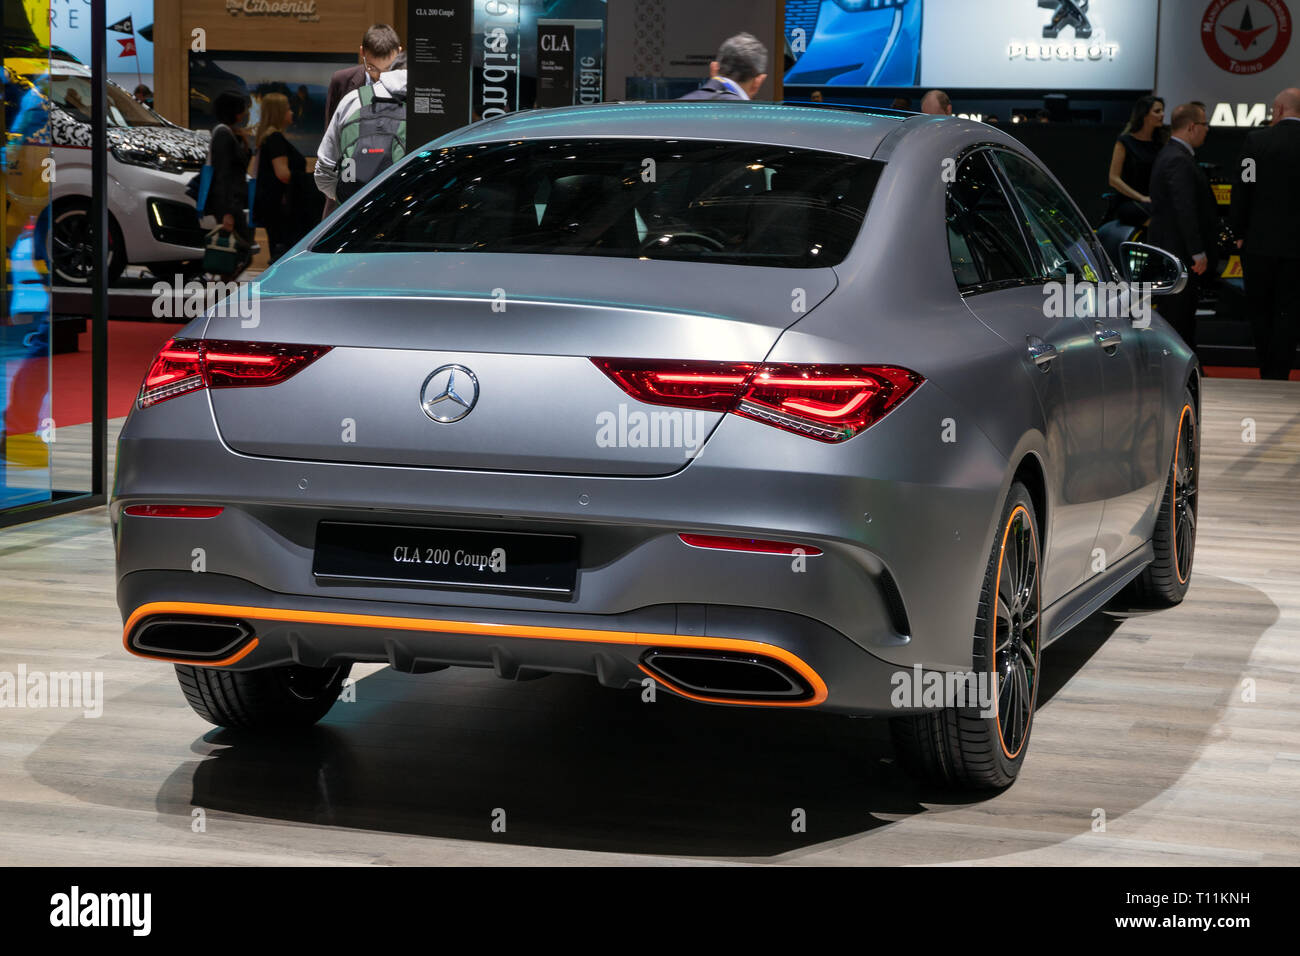 Mercedes Benz Cla Stockfotos und -bilder Kaufen - Seite 2 - Alamy